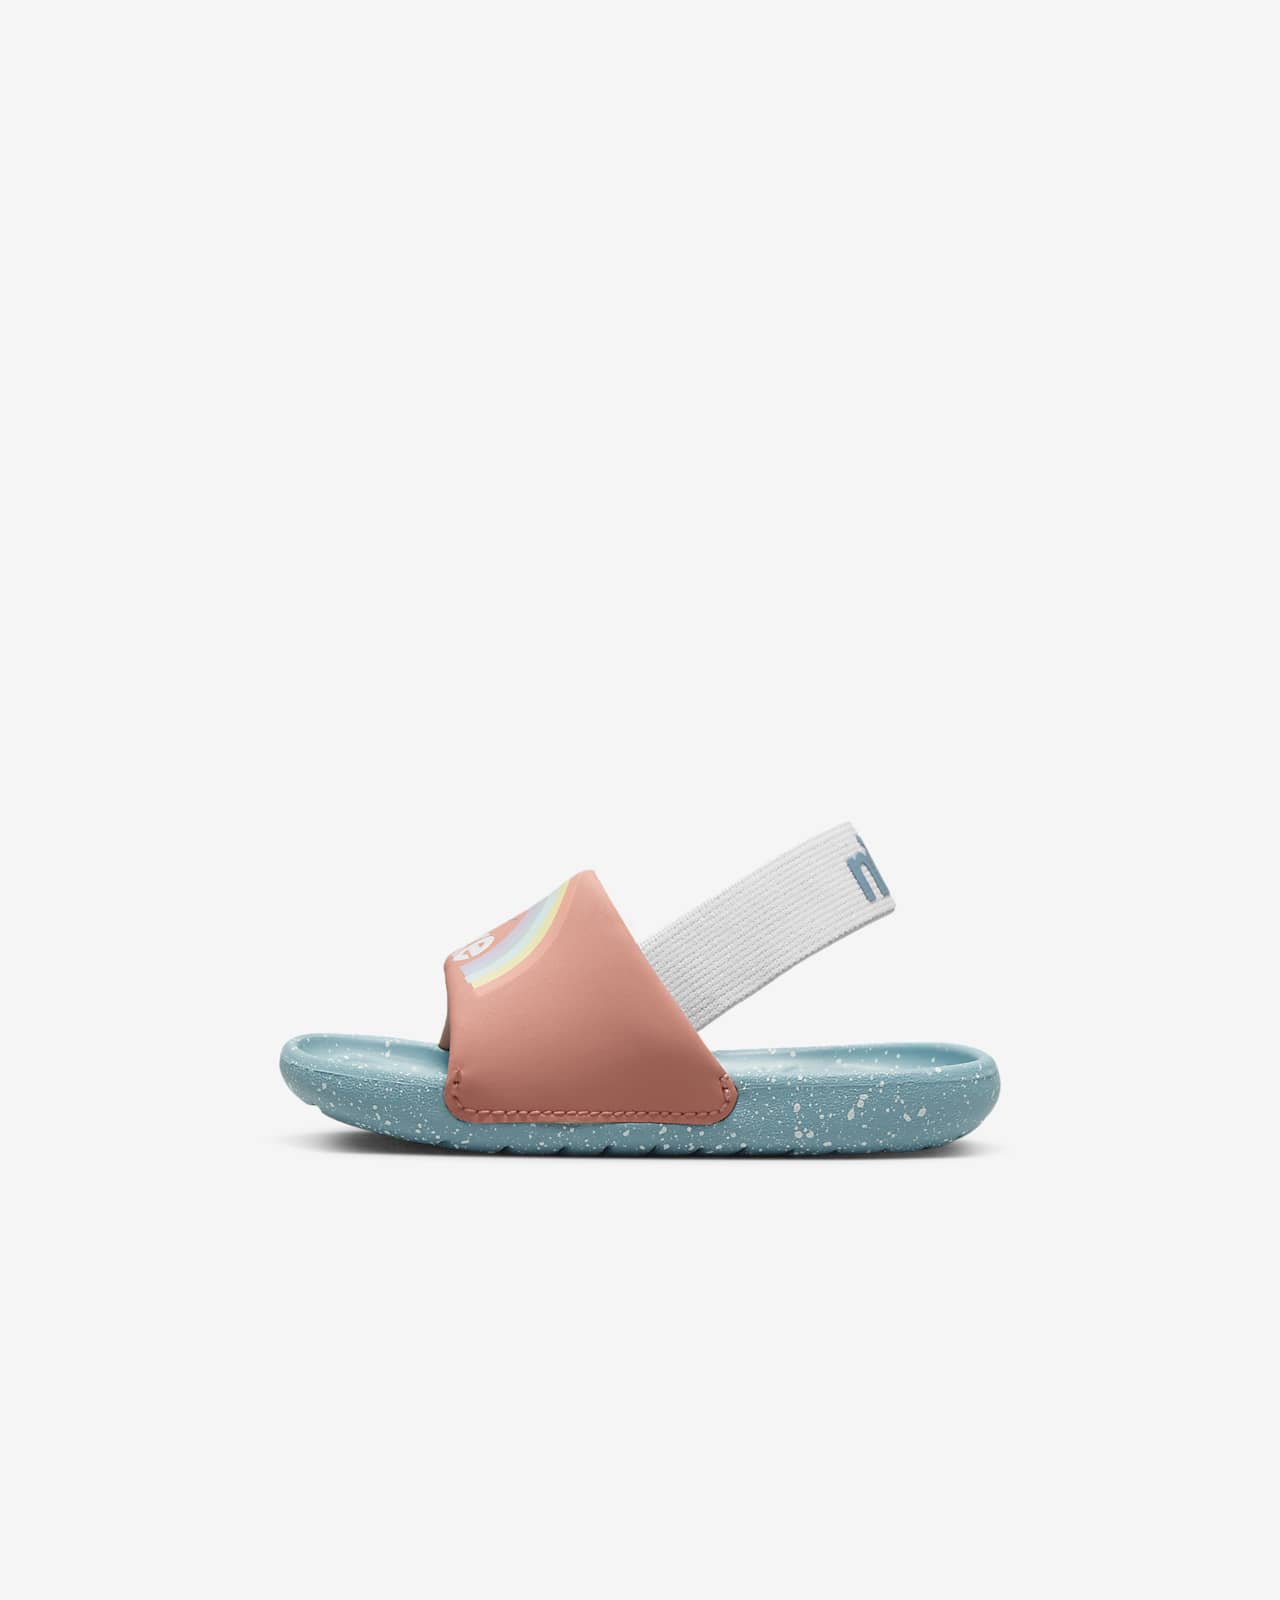 Nike Kawa SE Baby/Toddler Shoes